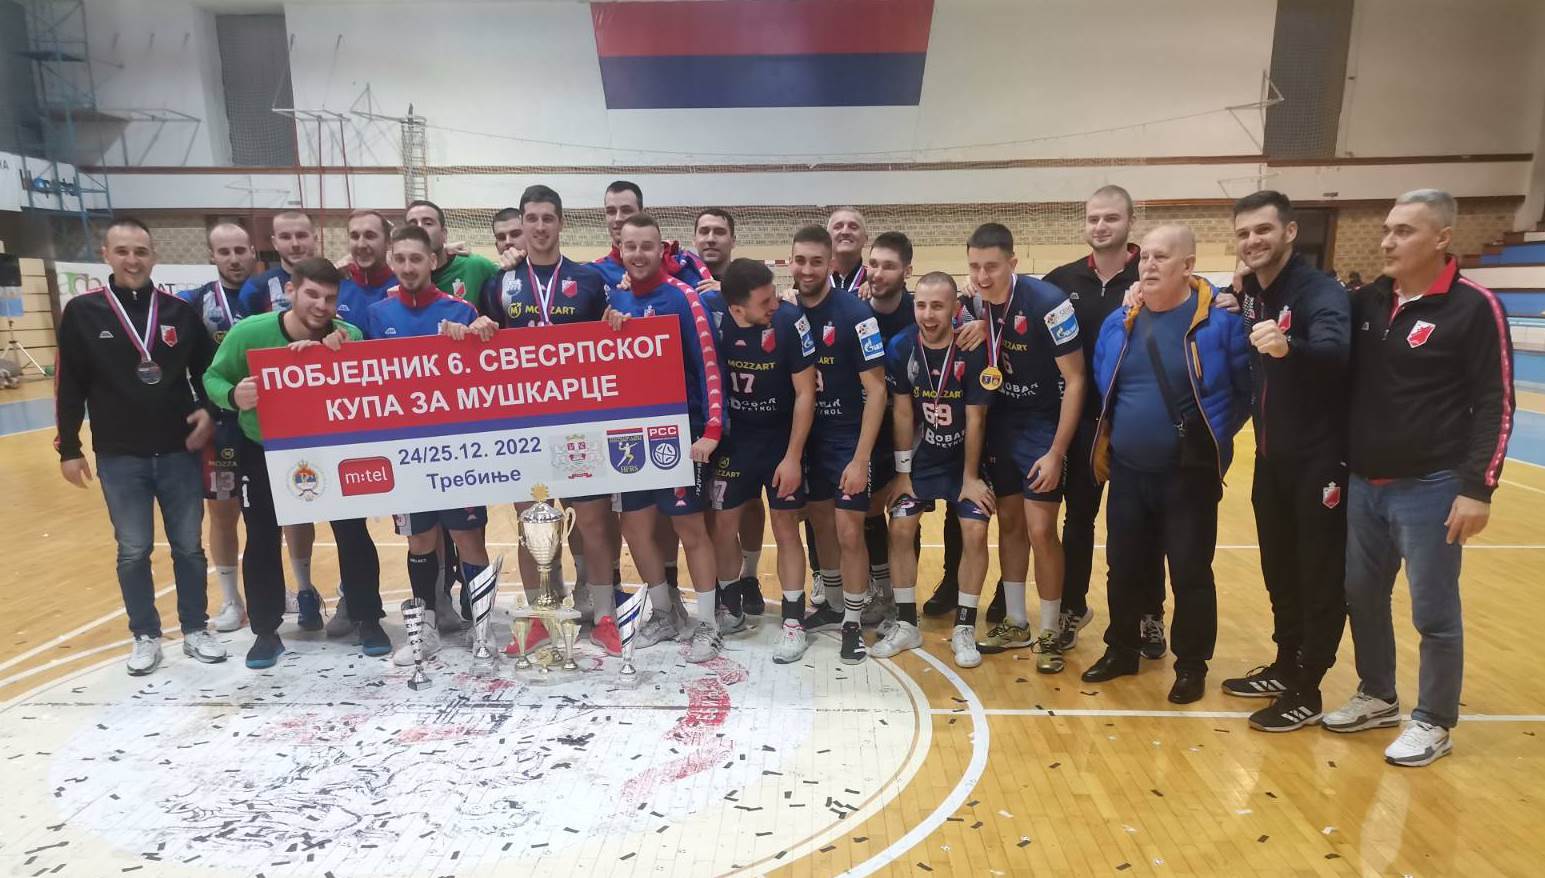  RK Vojvodina pobijedila RK Leotar i šesti put zaredom osvojila Svesrpski kup 2022 